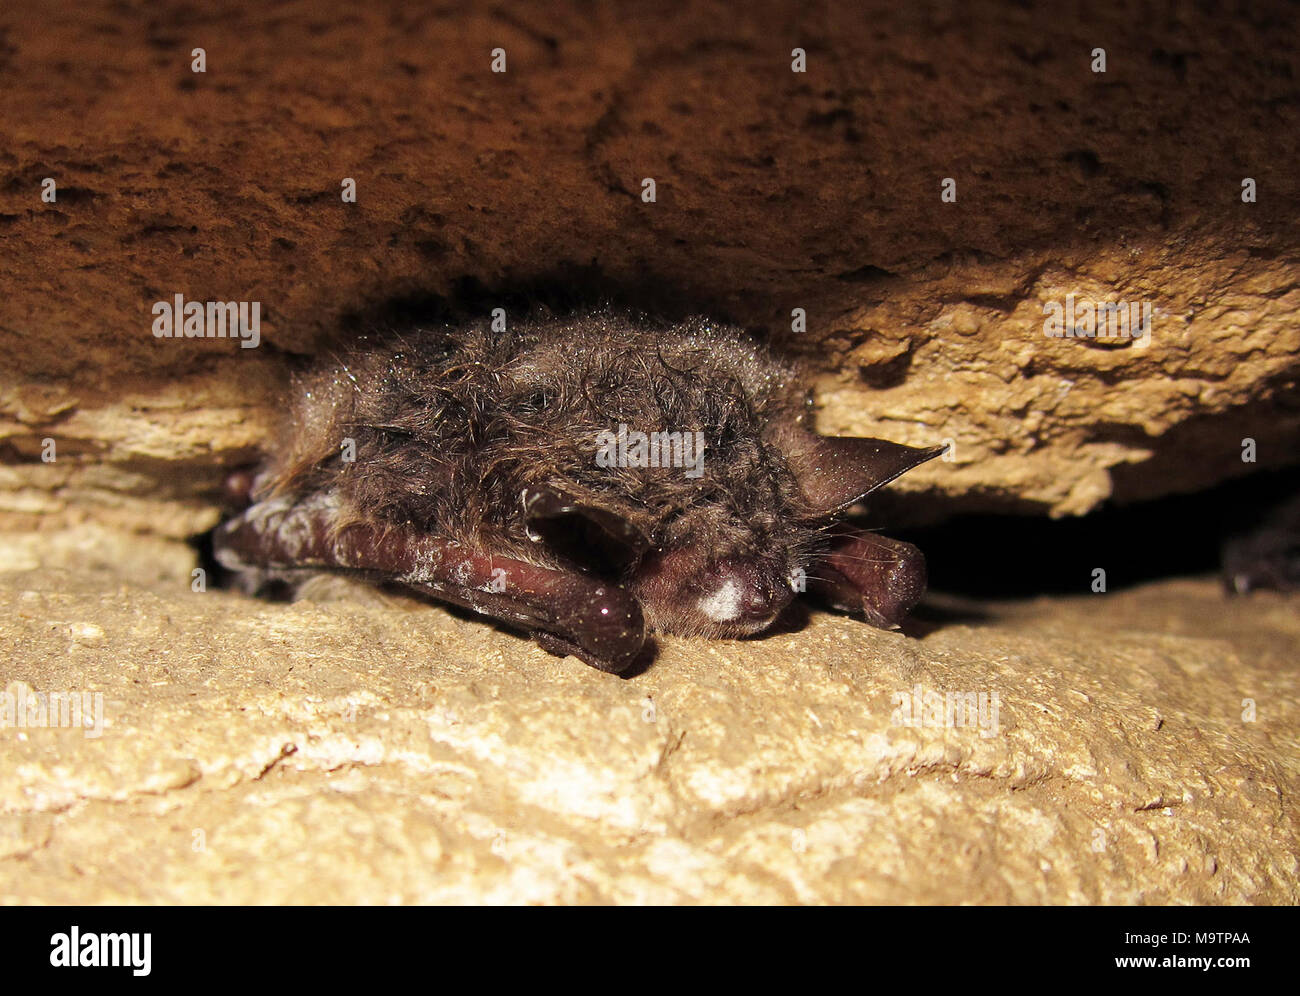 Northern long-eared bat. Northern long-eared bat Stock Photo